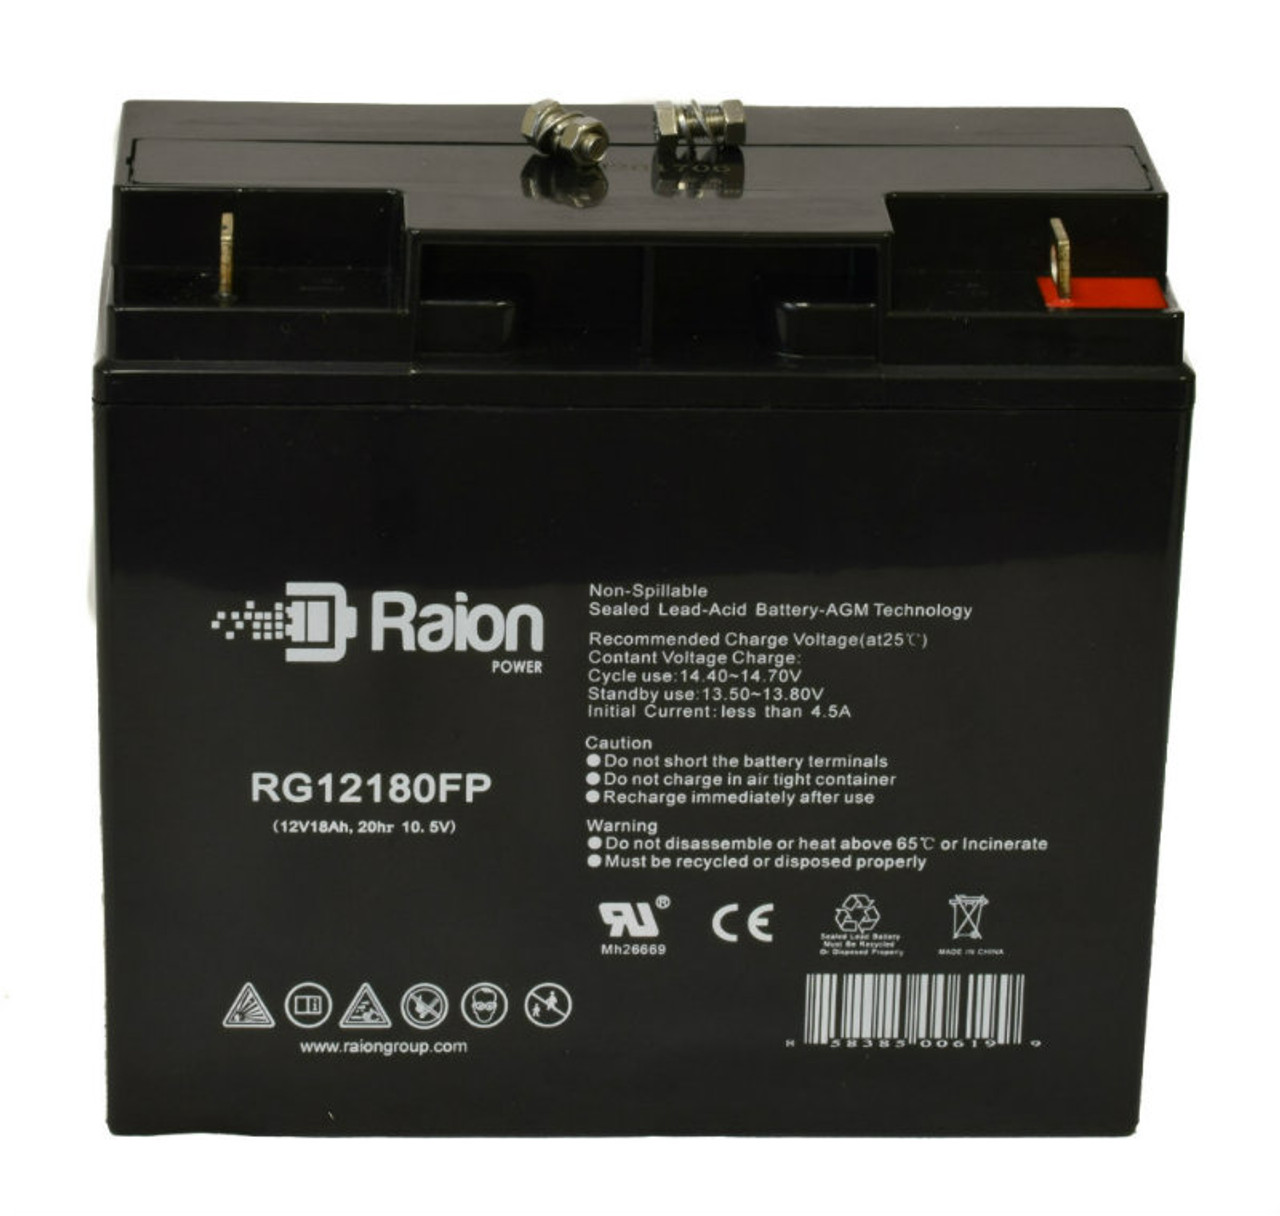 Raion Power RG12180FP 12V 18Ah Lead Acid Battery for EWheels EW-82 Happy Day